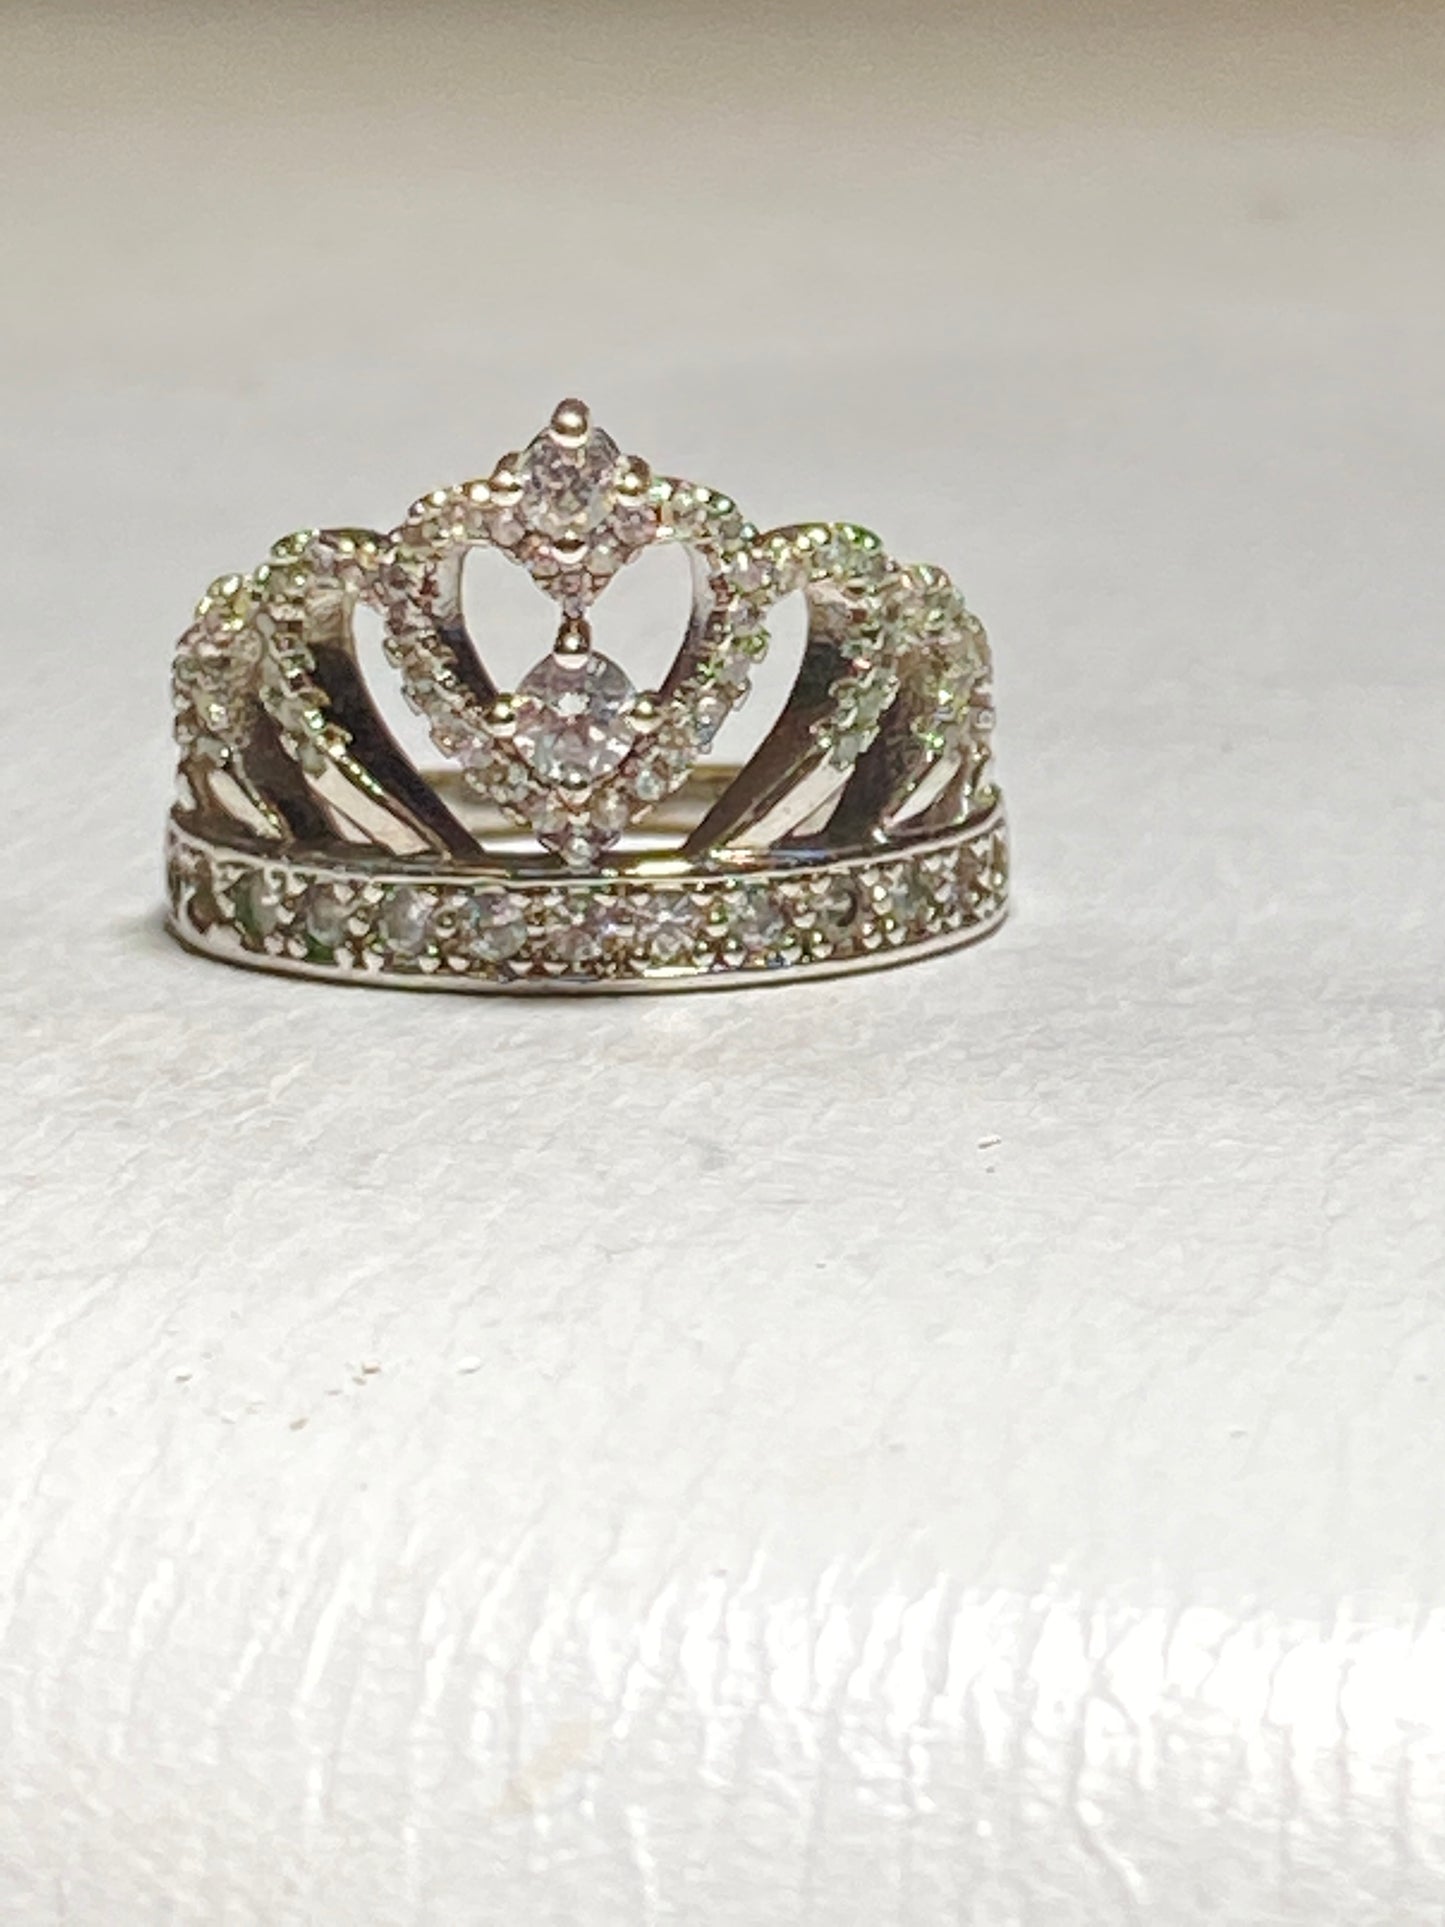 Tiara ring crown band princess girls birthday sterling silver women